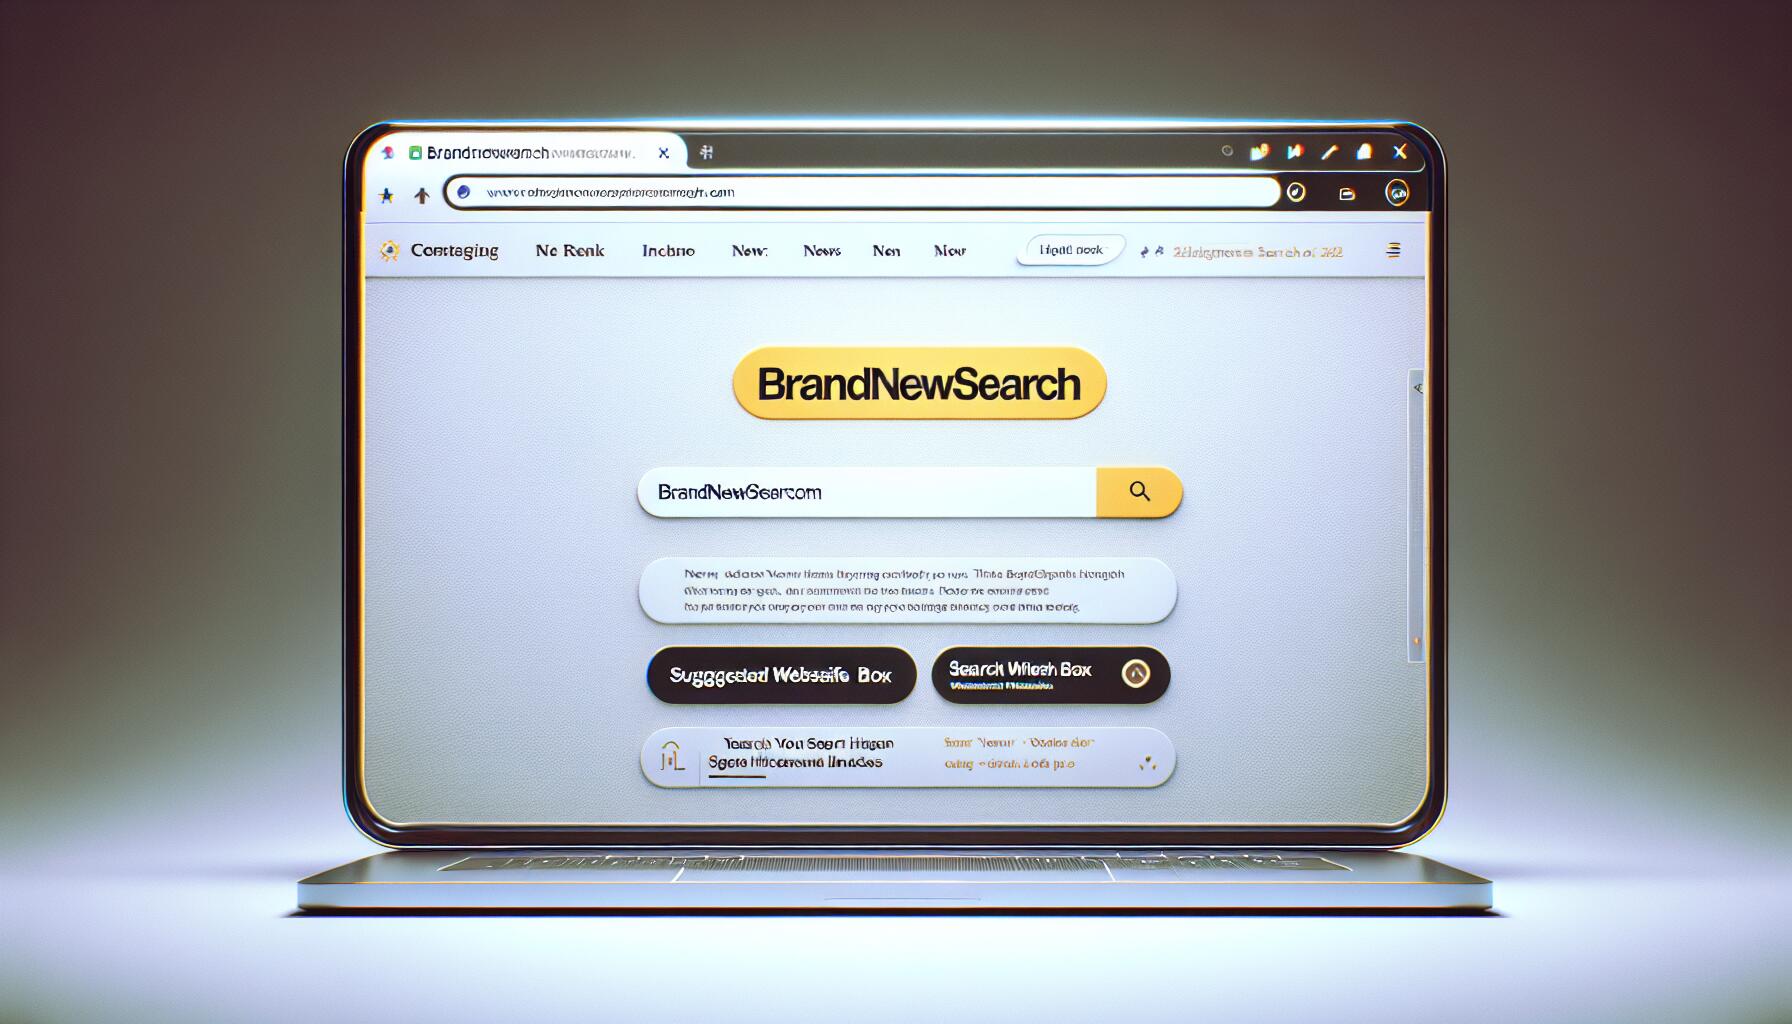 brandnewsearch.com